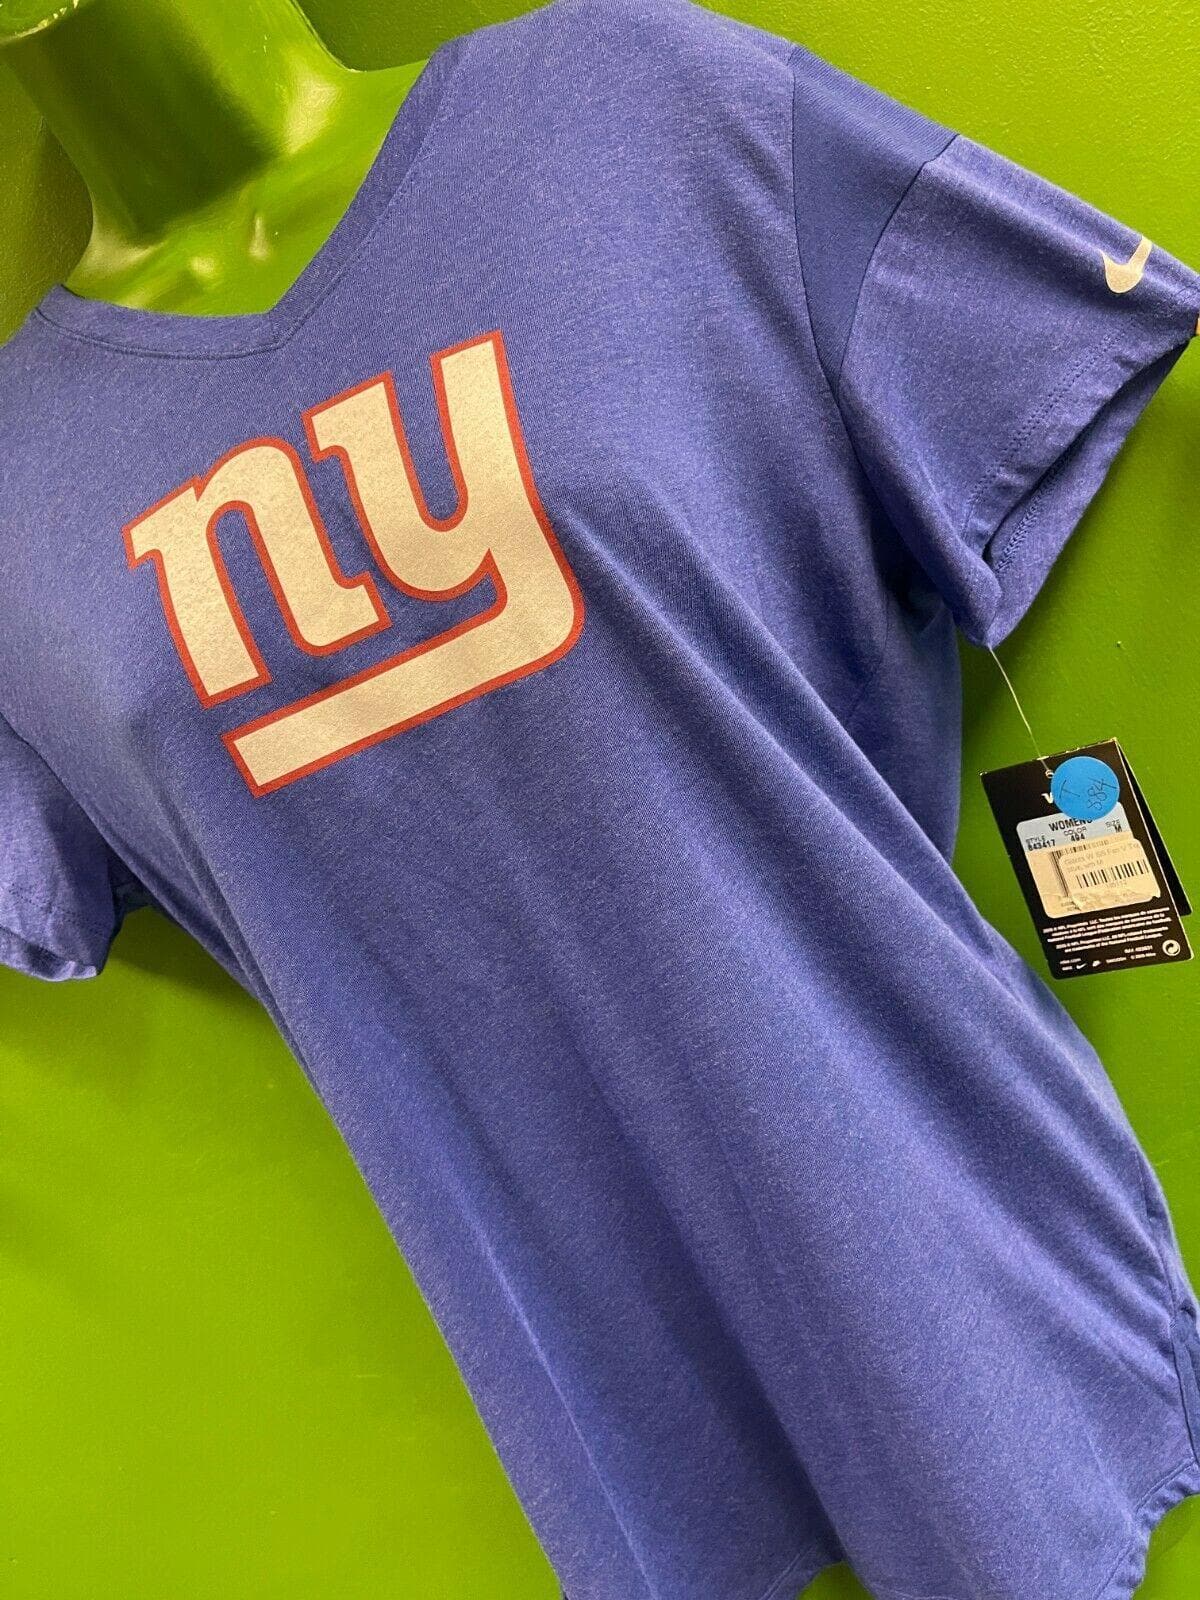 NFL New York Giants V-Neck Classic Logo T-Shirt Women's XL NWOT